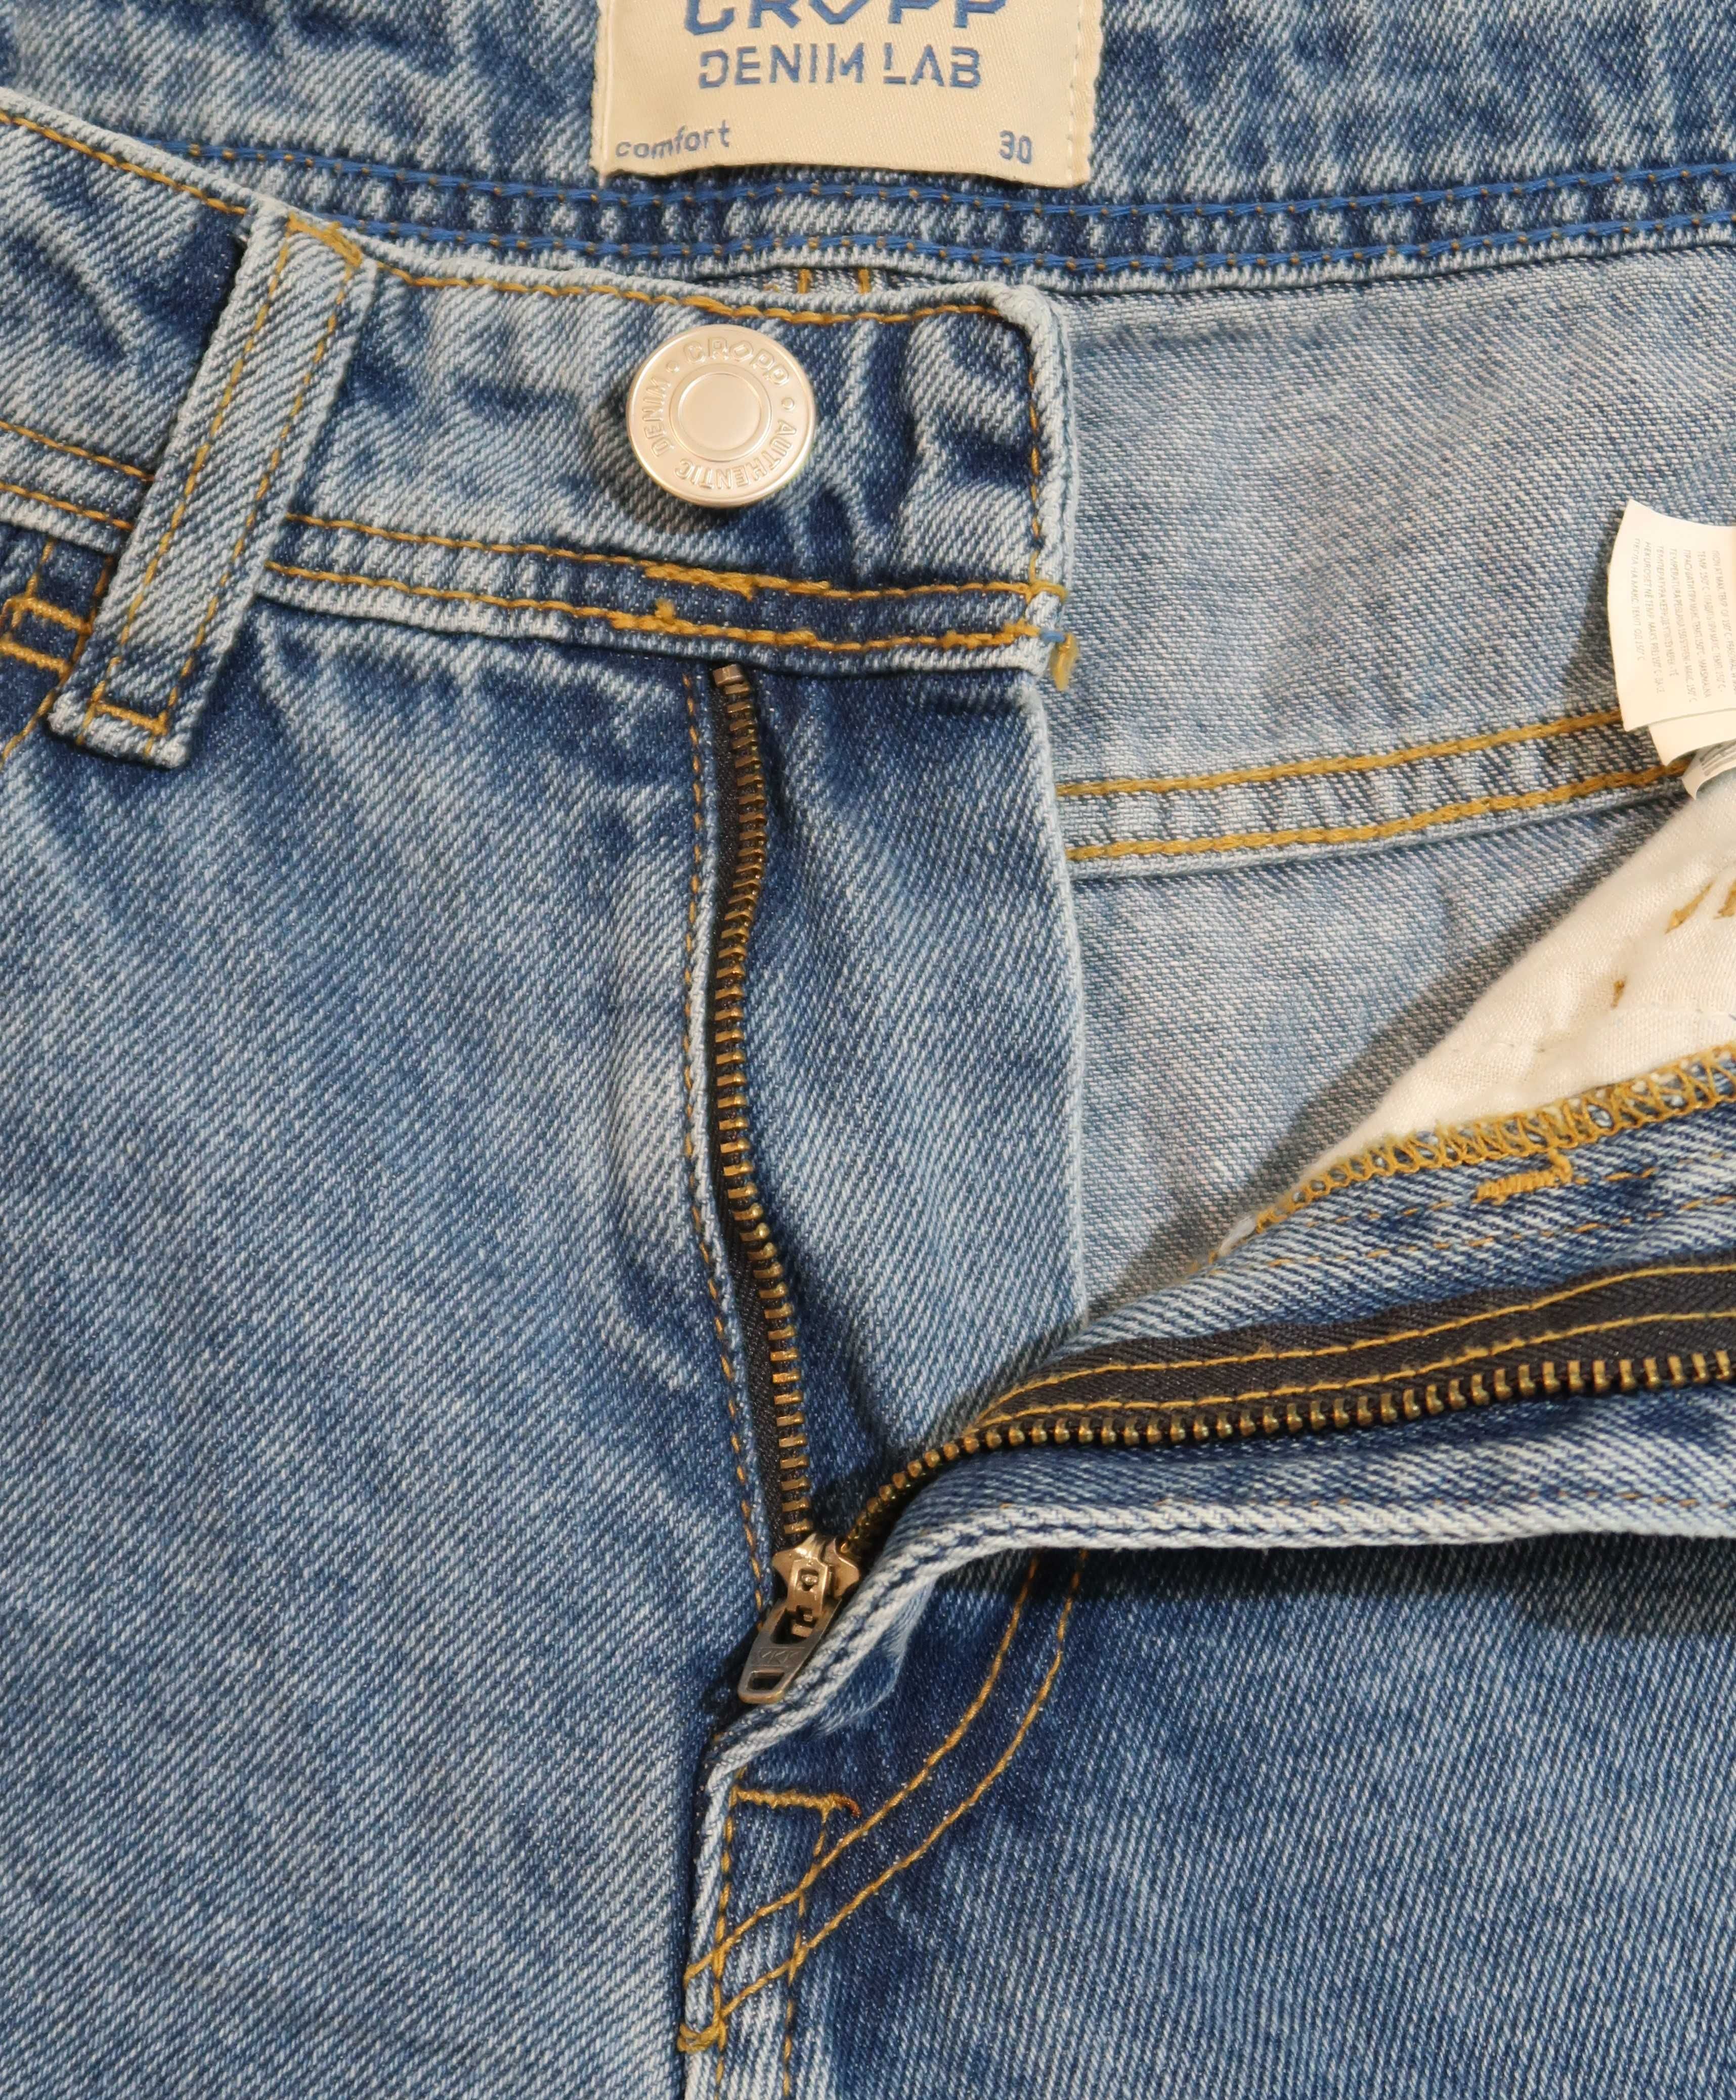 Cropp spodenki krótkie jeansowe męskie Rozmiar S/M nowe z metką